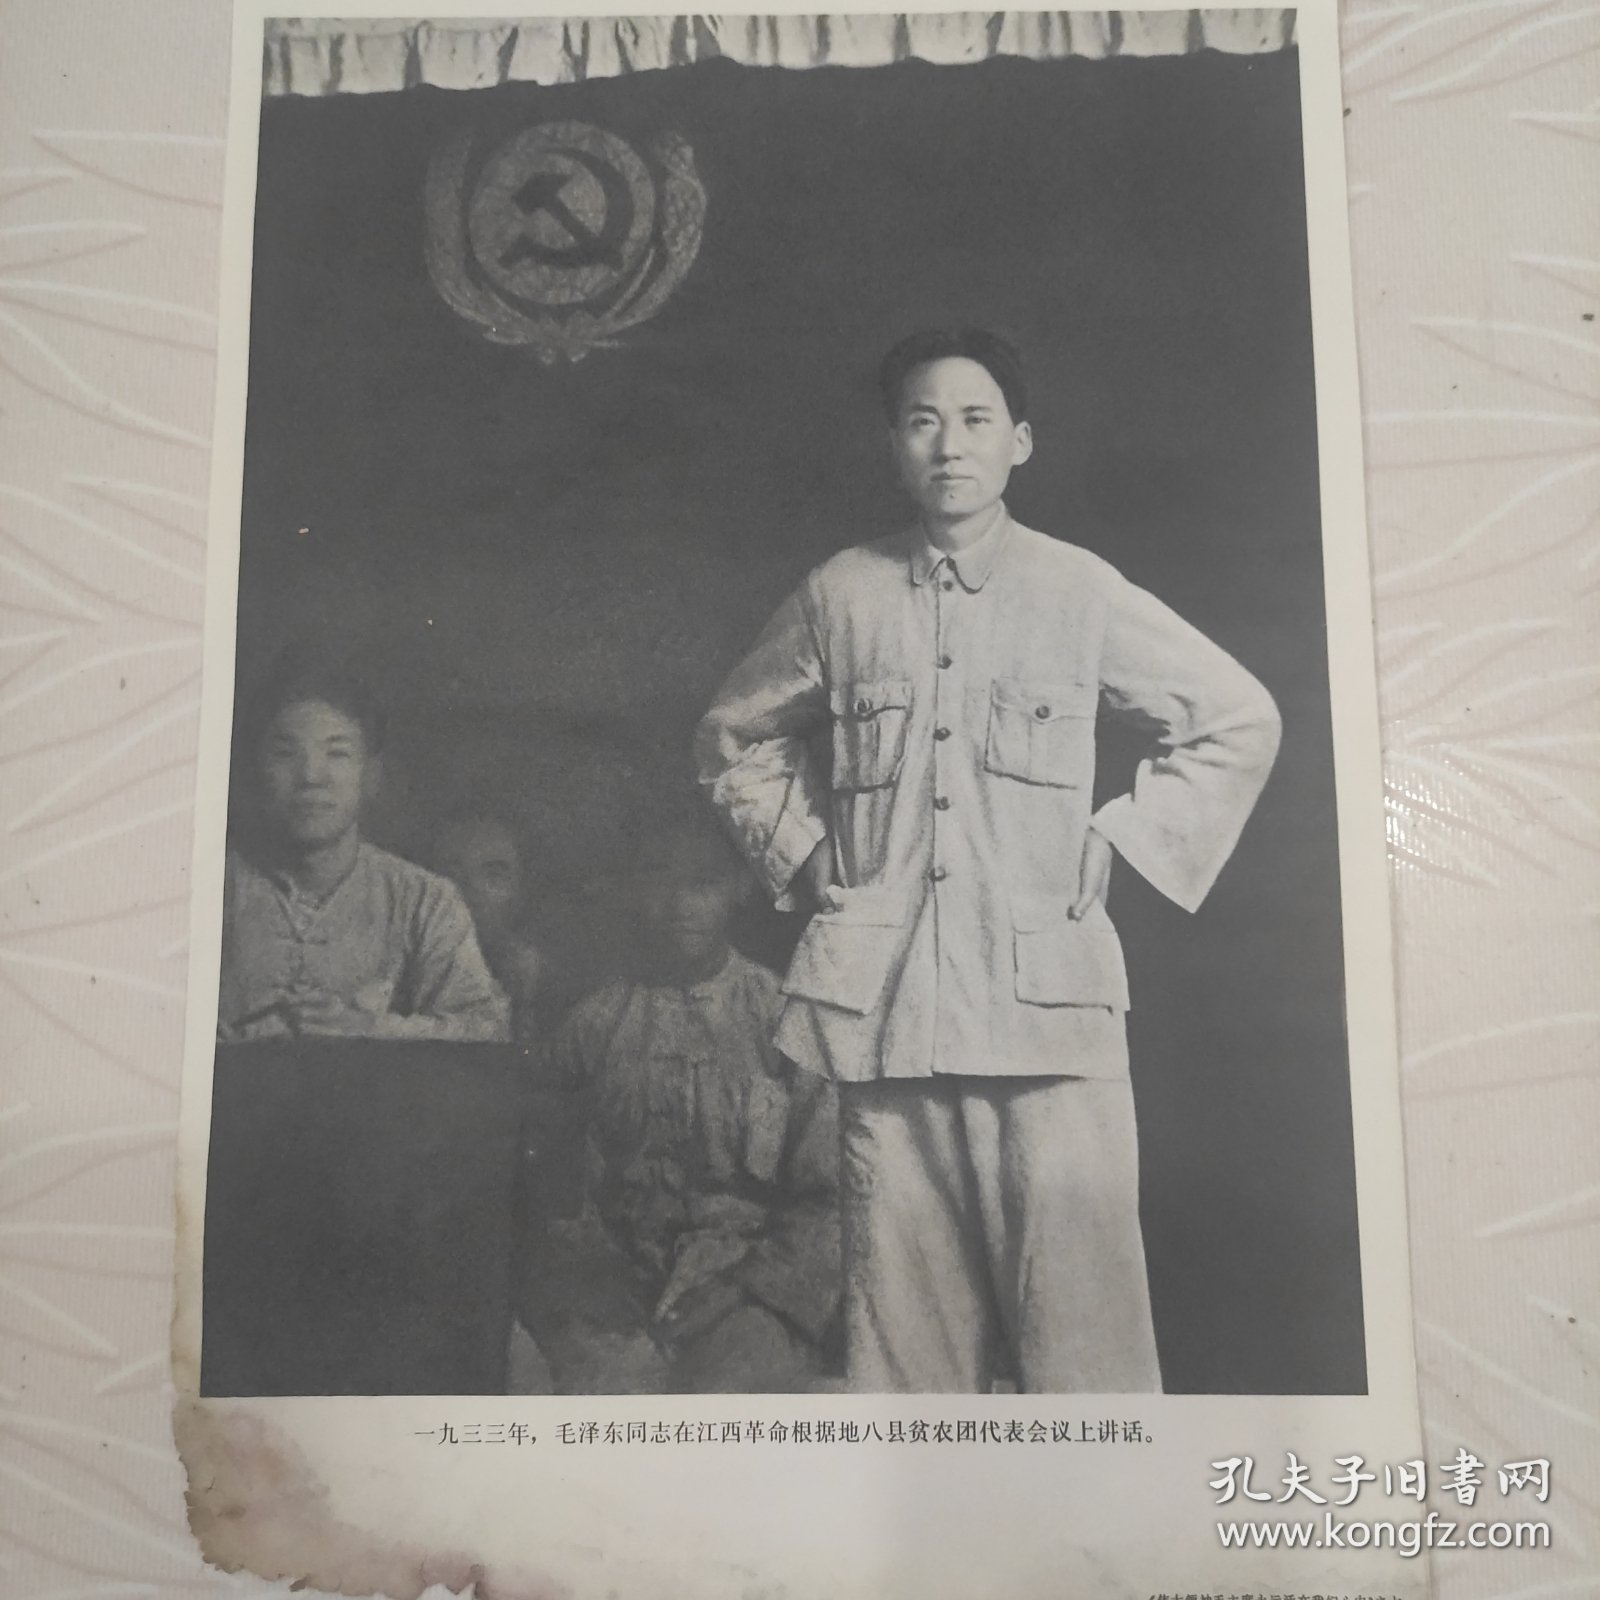 毛主席图像画片宣传画，1933年毛泽东同志在江西革命根据地八县贫农团代表会议上话，品相如图边角有破损。